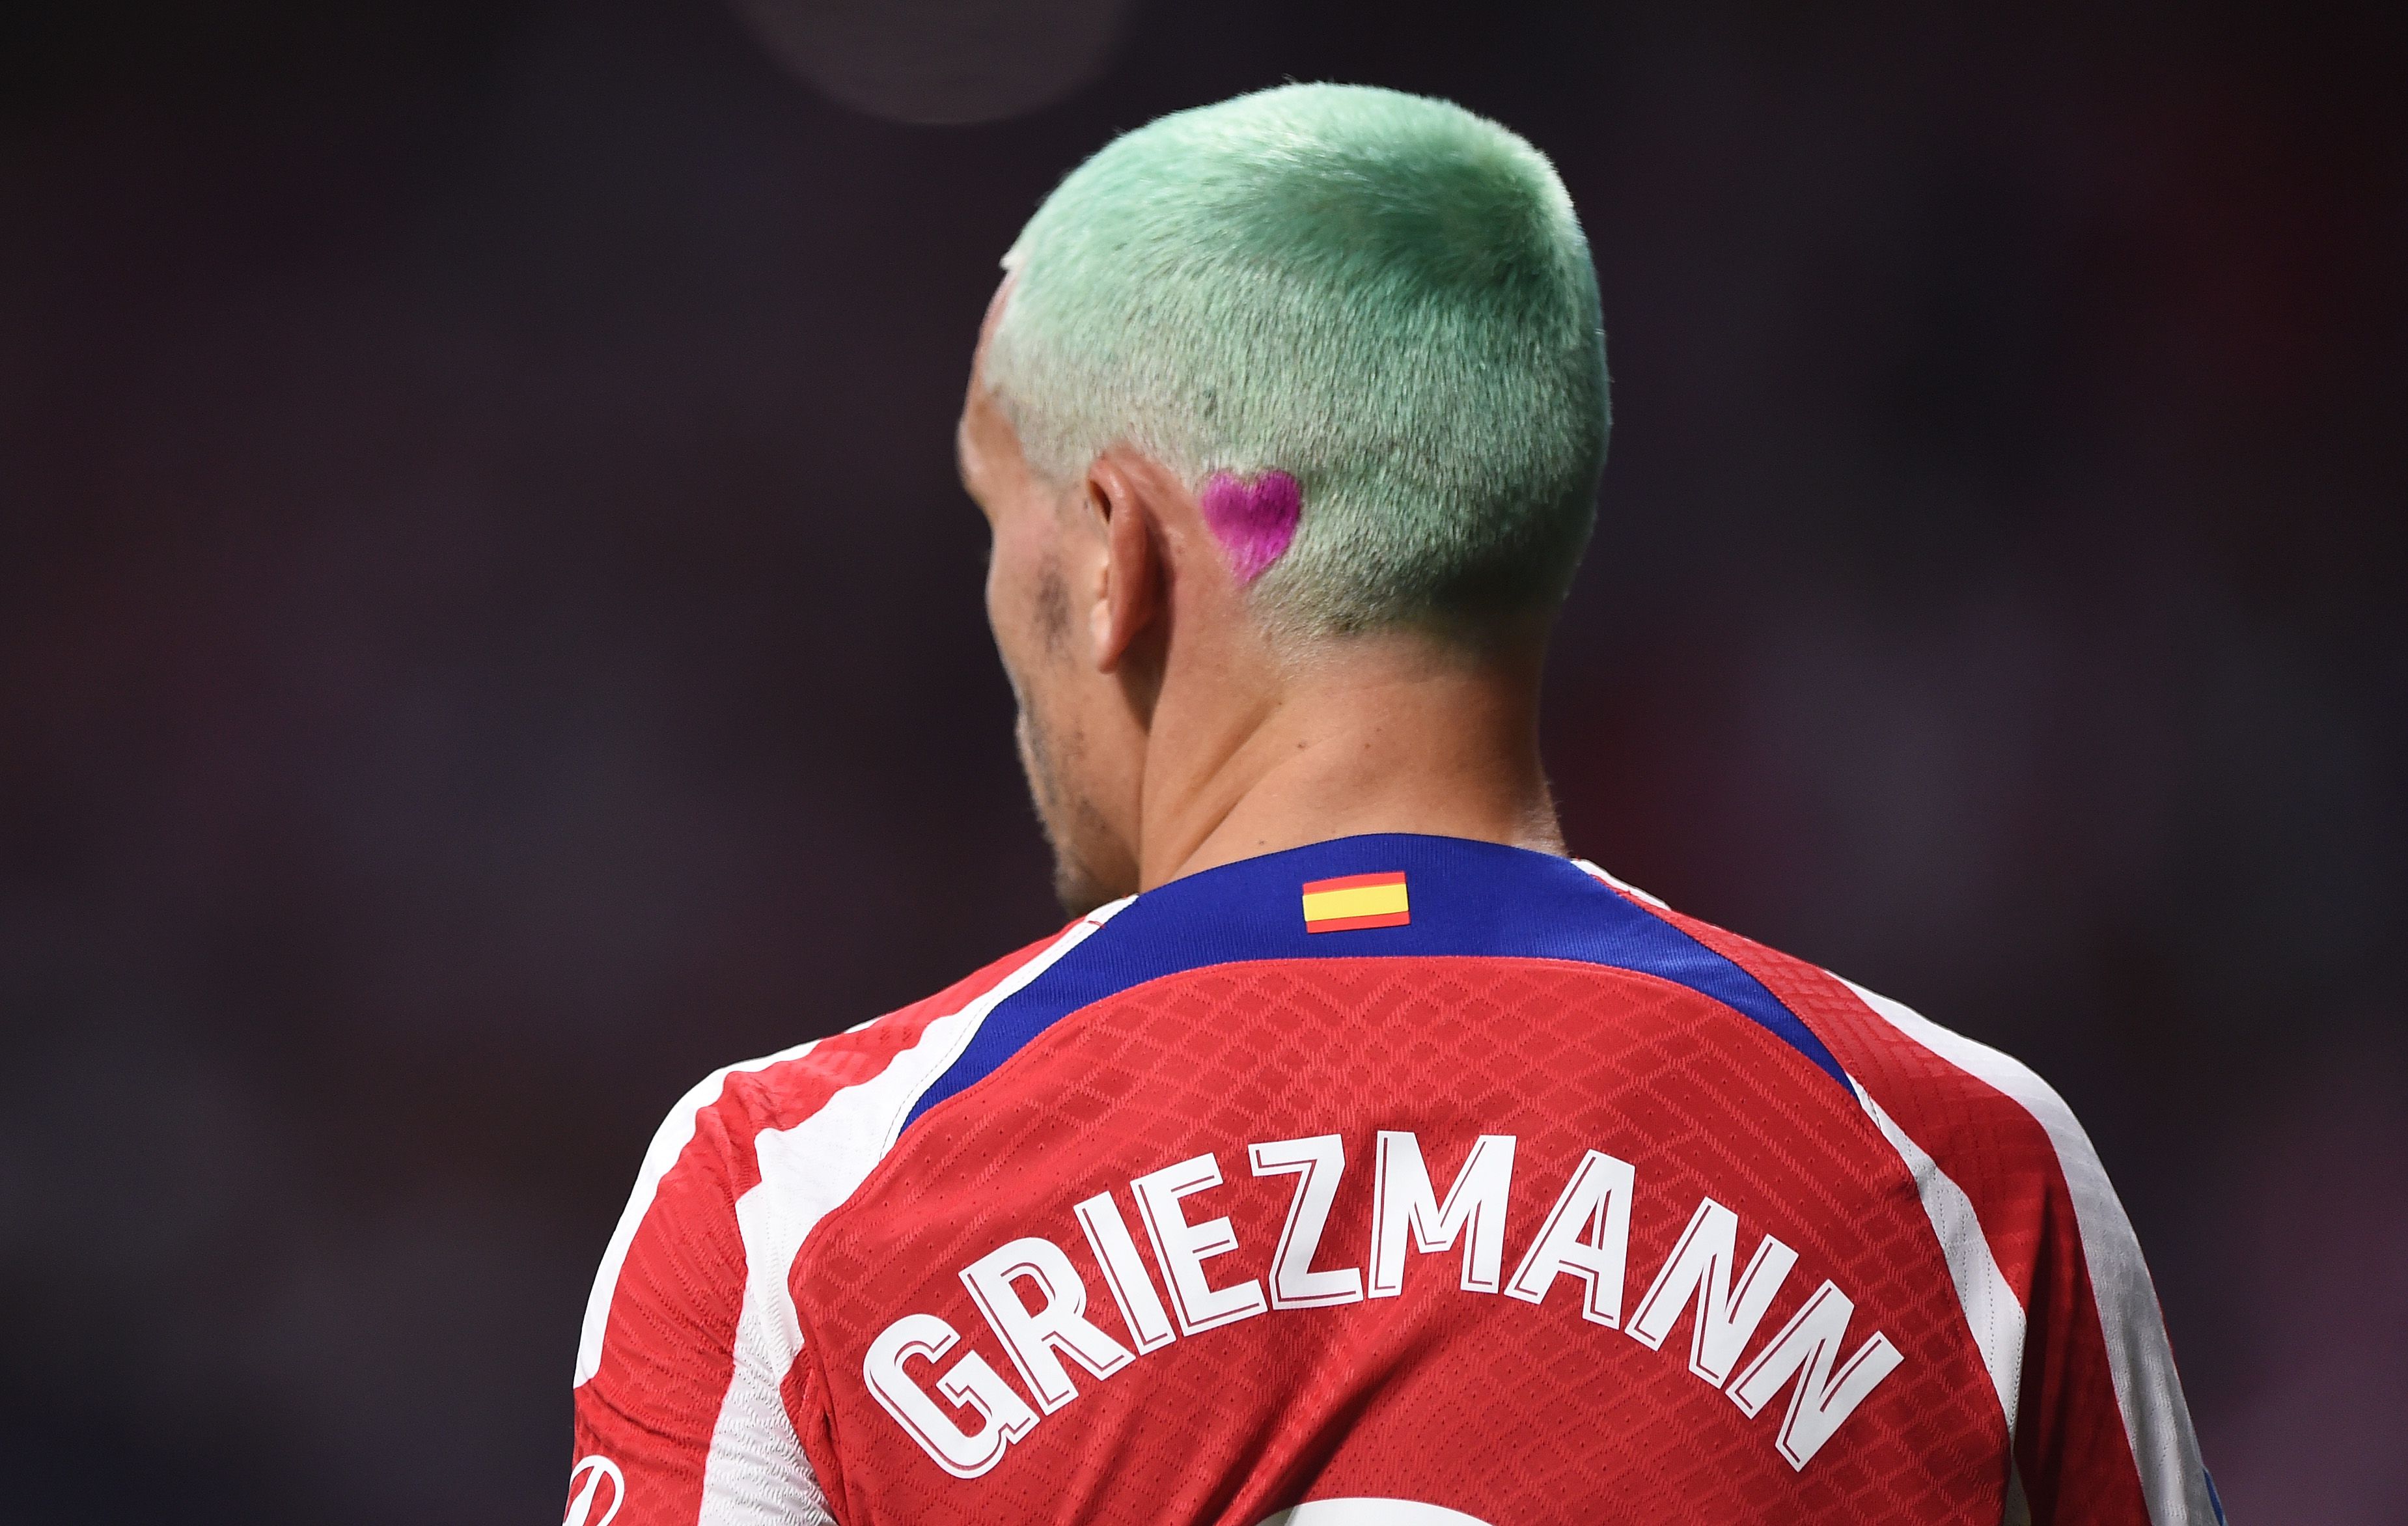 Ha a játéka mostanában nem is, a haja legalább színes a francia világbajnok, Griezmann-nak / Fotó: Getty Images